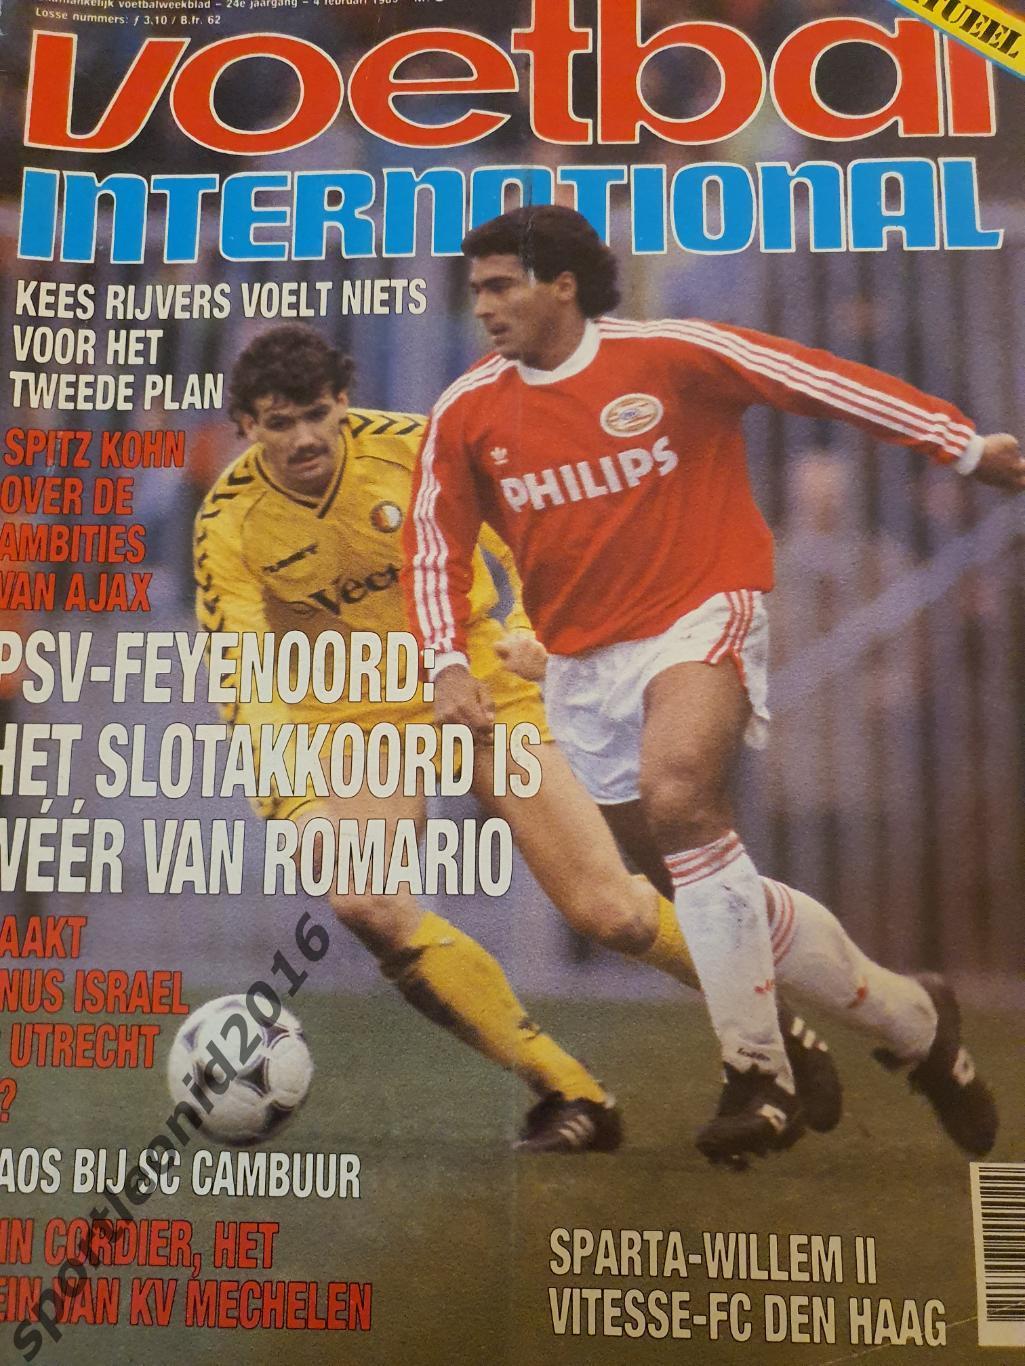 Voetbal International 1990 и 1989 годов выпуска.12 журналов.4 3